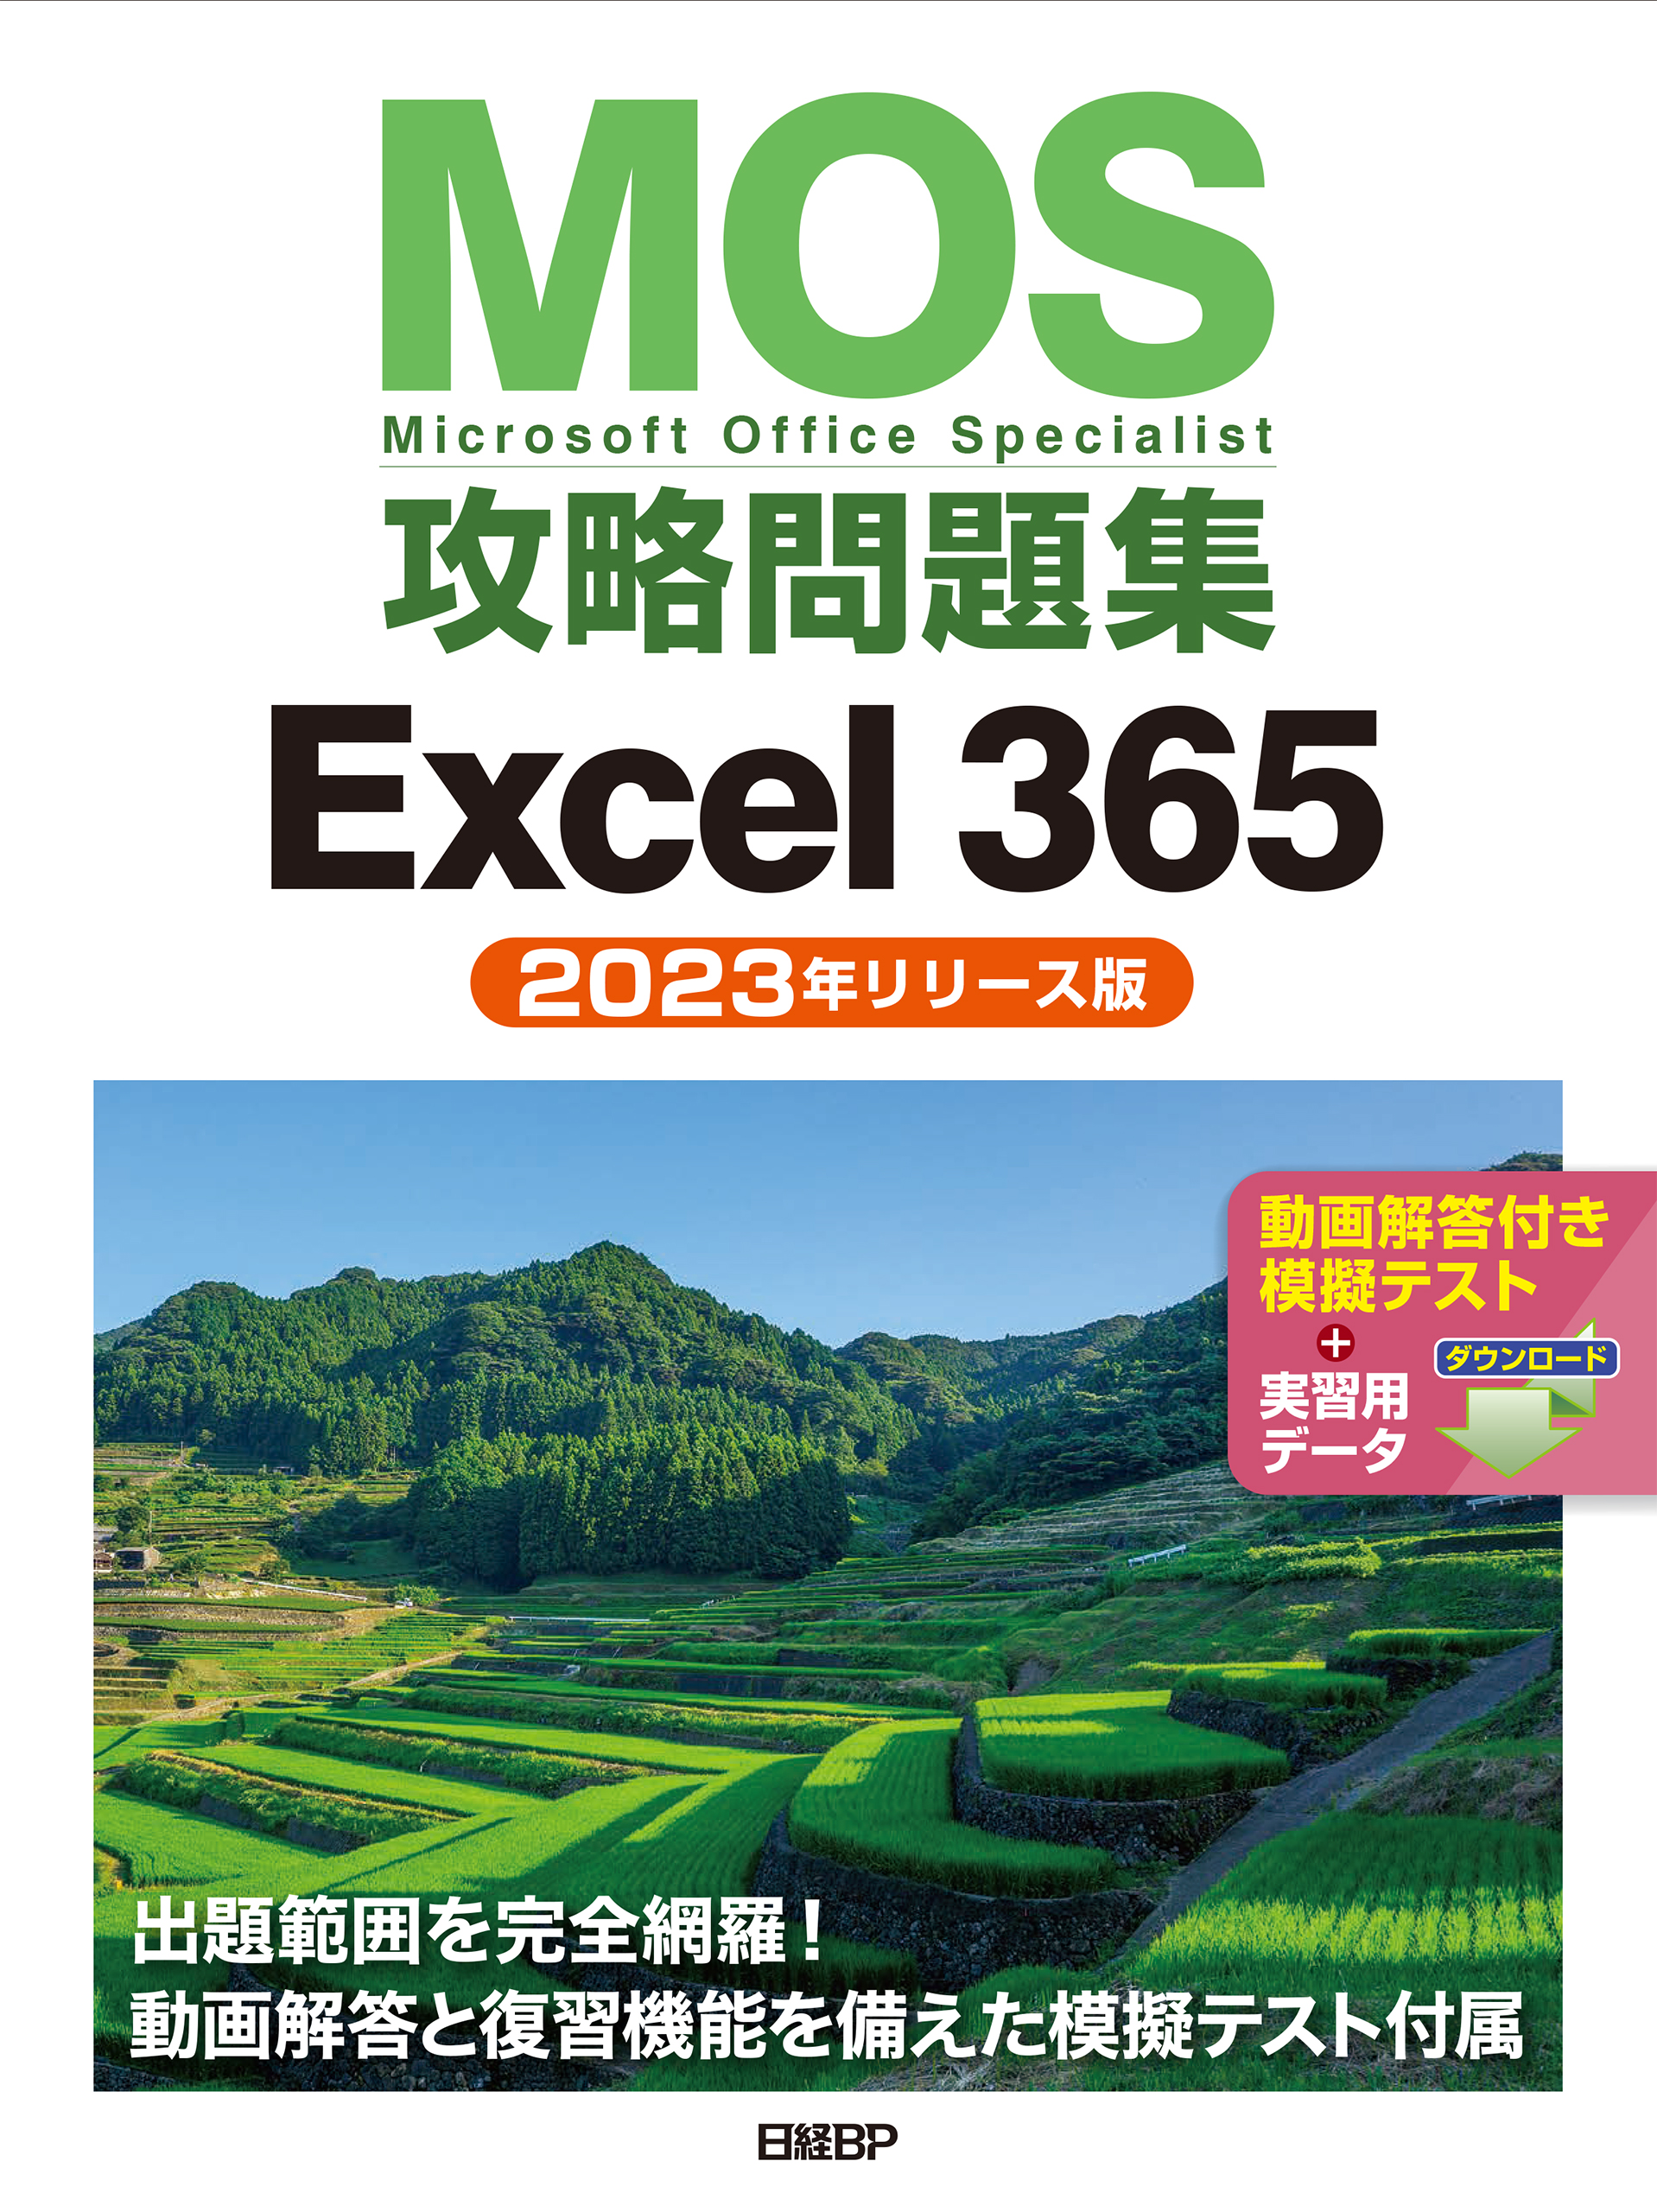 MOS攻略問題集Excel 2016エキスパート - コンピュータ・IT